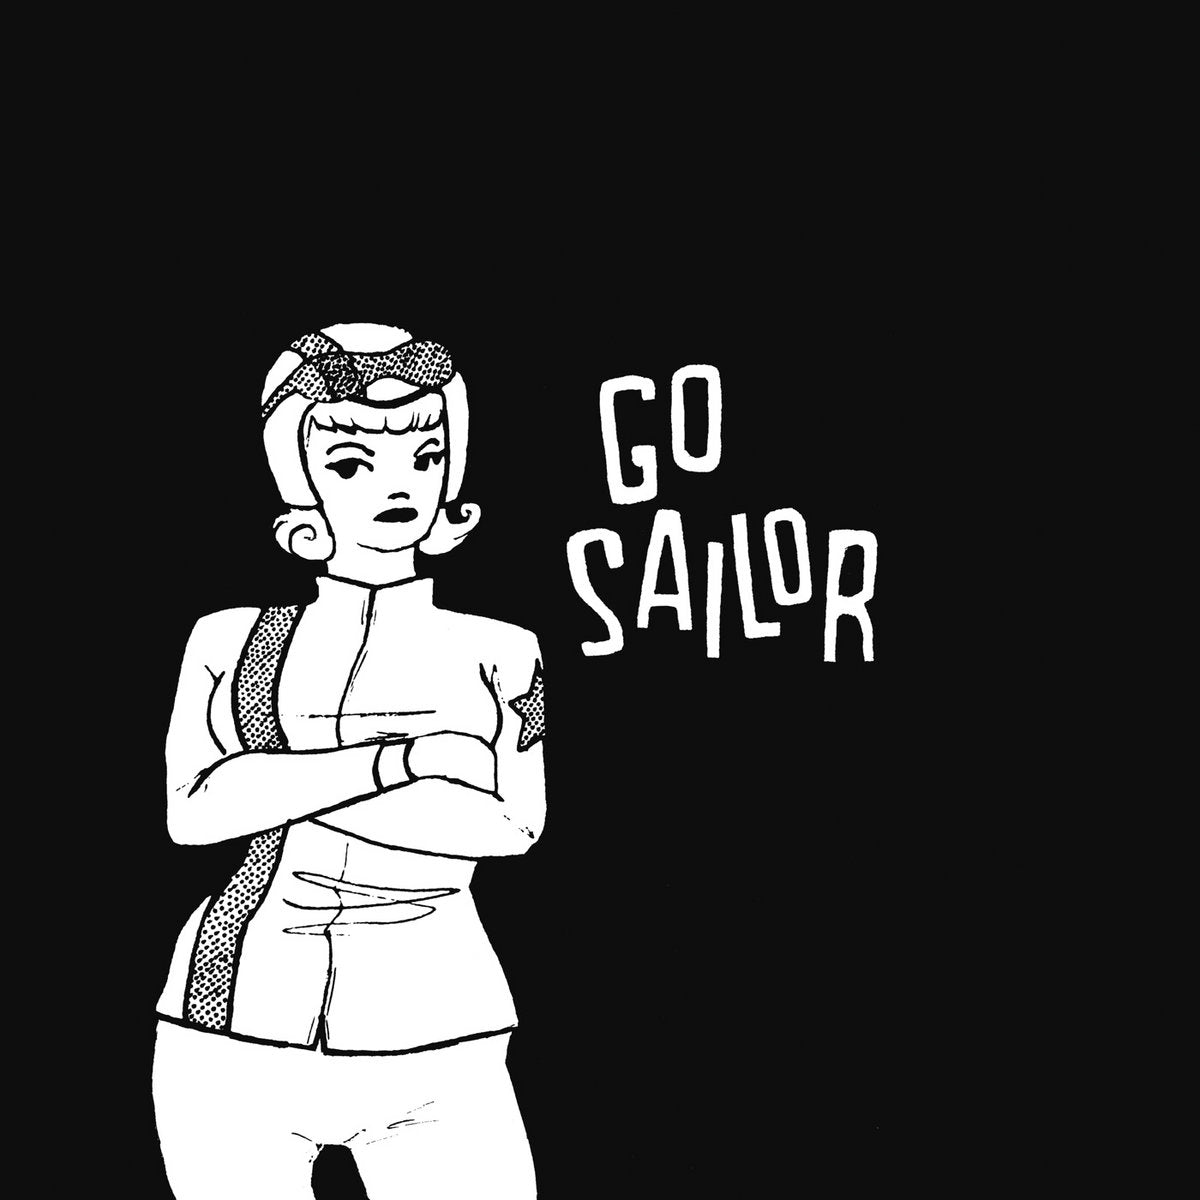 GO SAILOR – Go Sailor